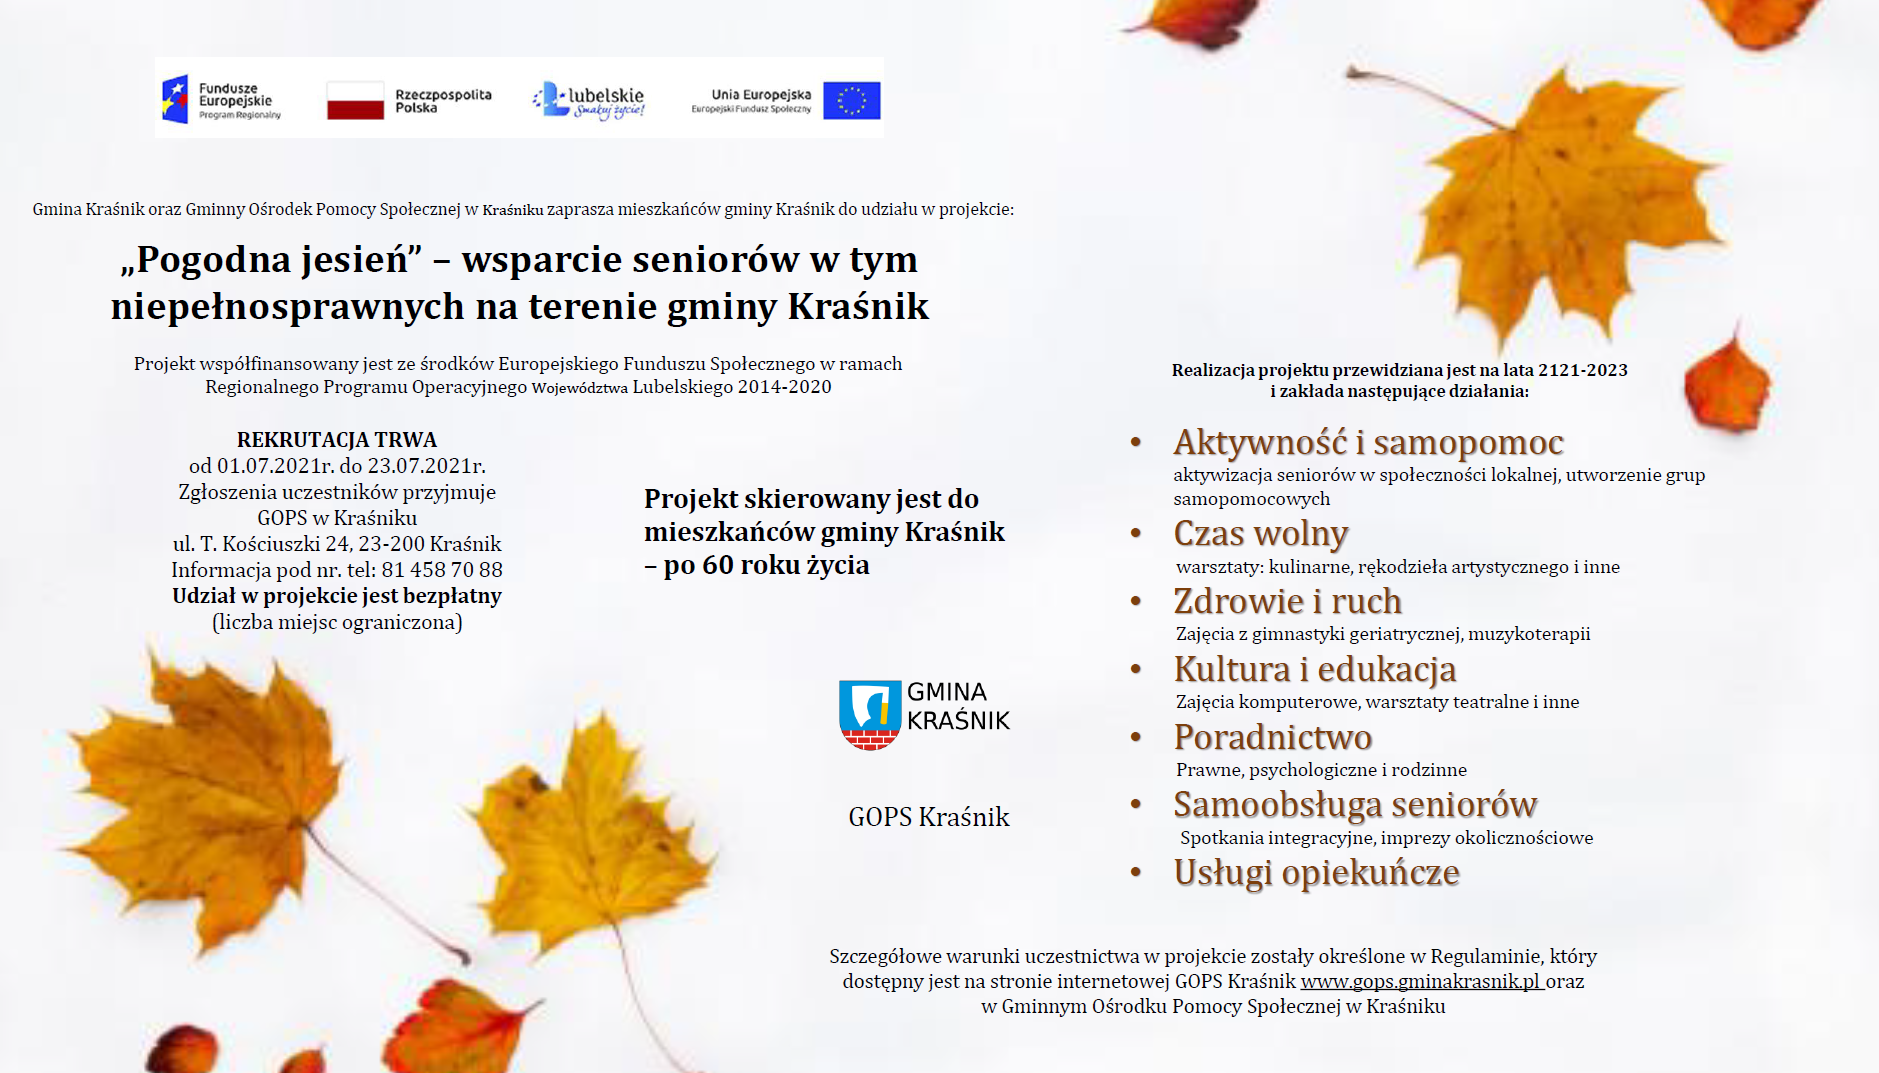 „Pogodna jesień” wsparcie seniorów w tym niepełnosprawnych na terenie gminy Kraśnik